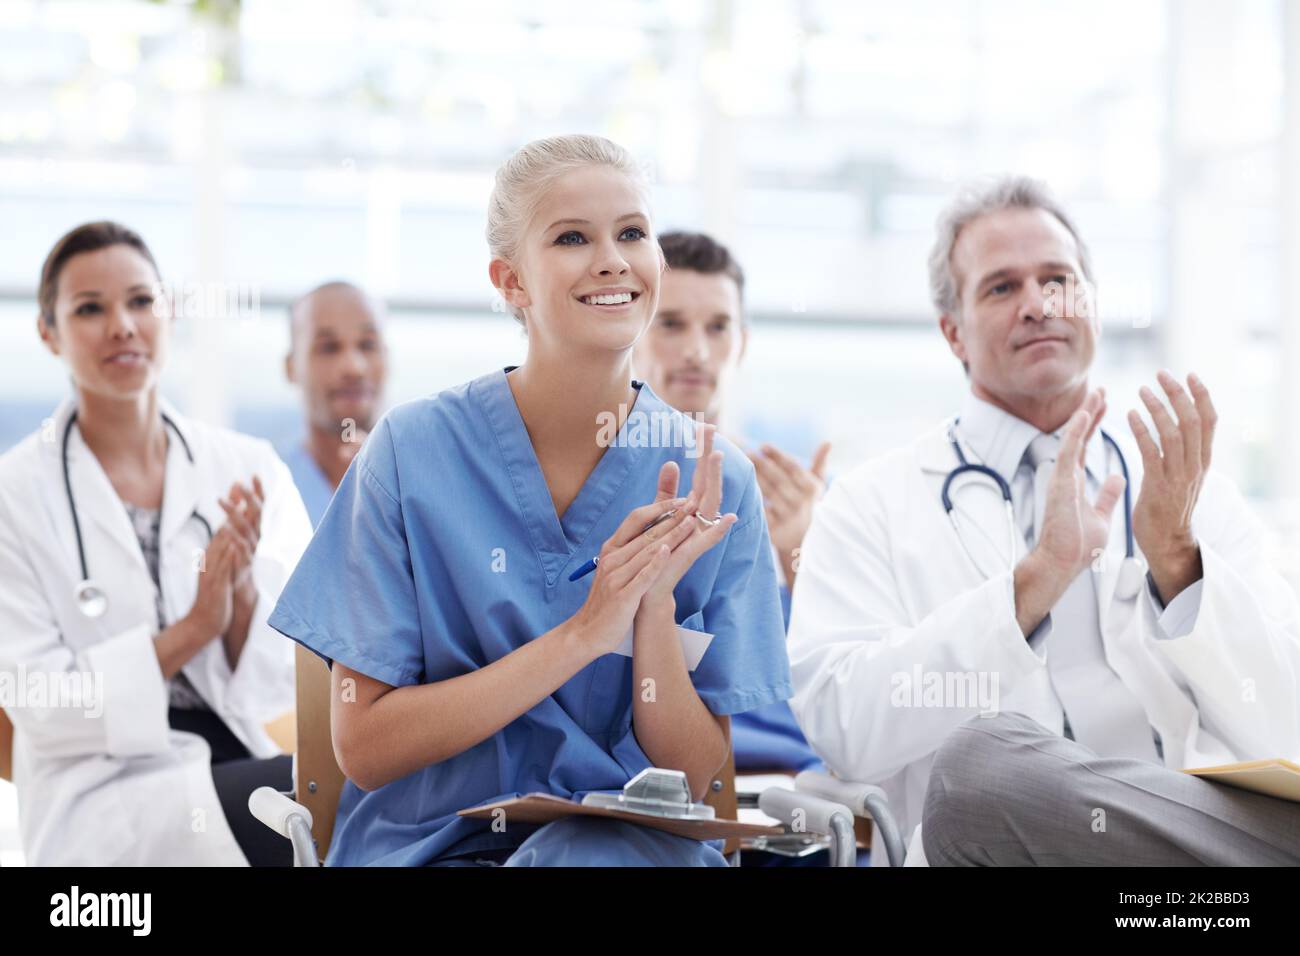 Wir feiern bahnbrechende Erfolge im Gesundheitswesen. Ärzte und Krankenschwestern applaudieren ihrem Dozenten. Stockfoto